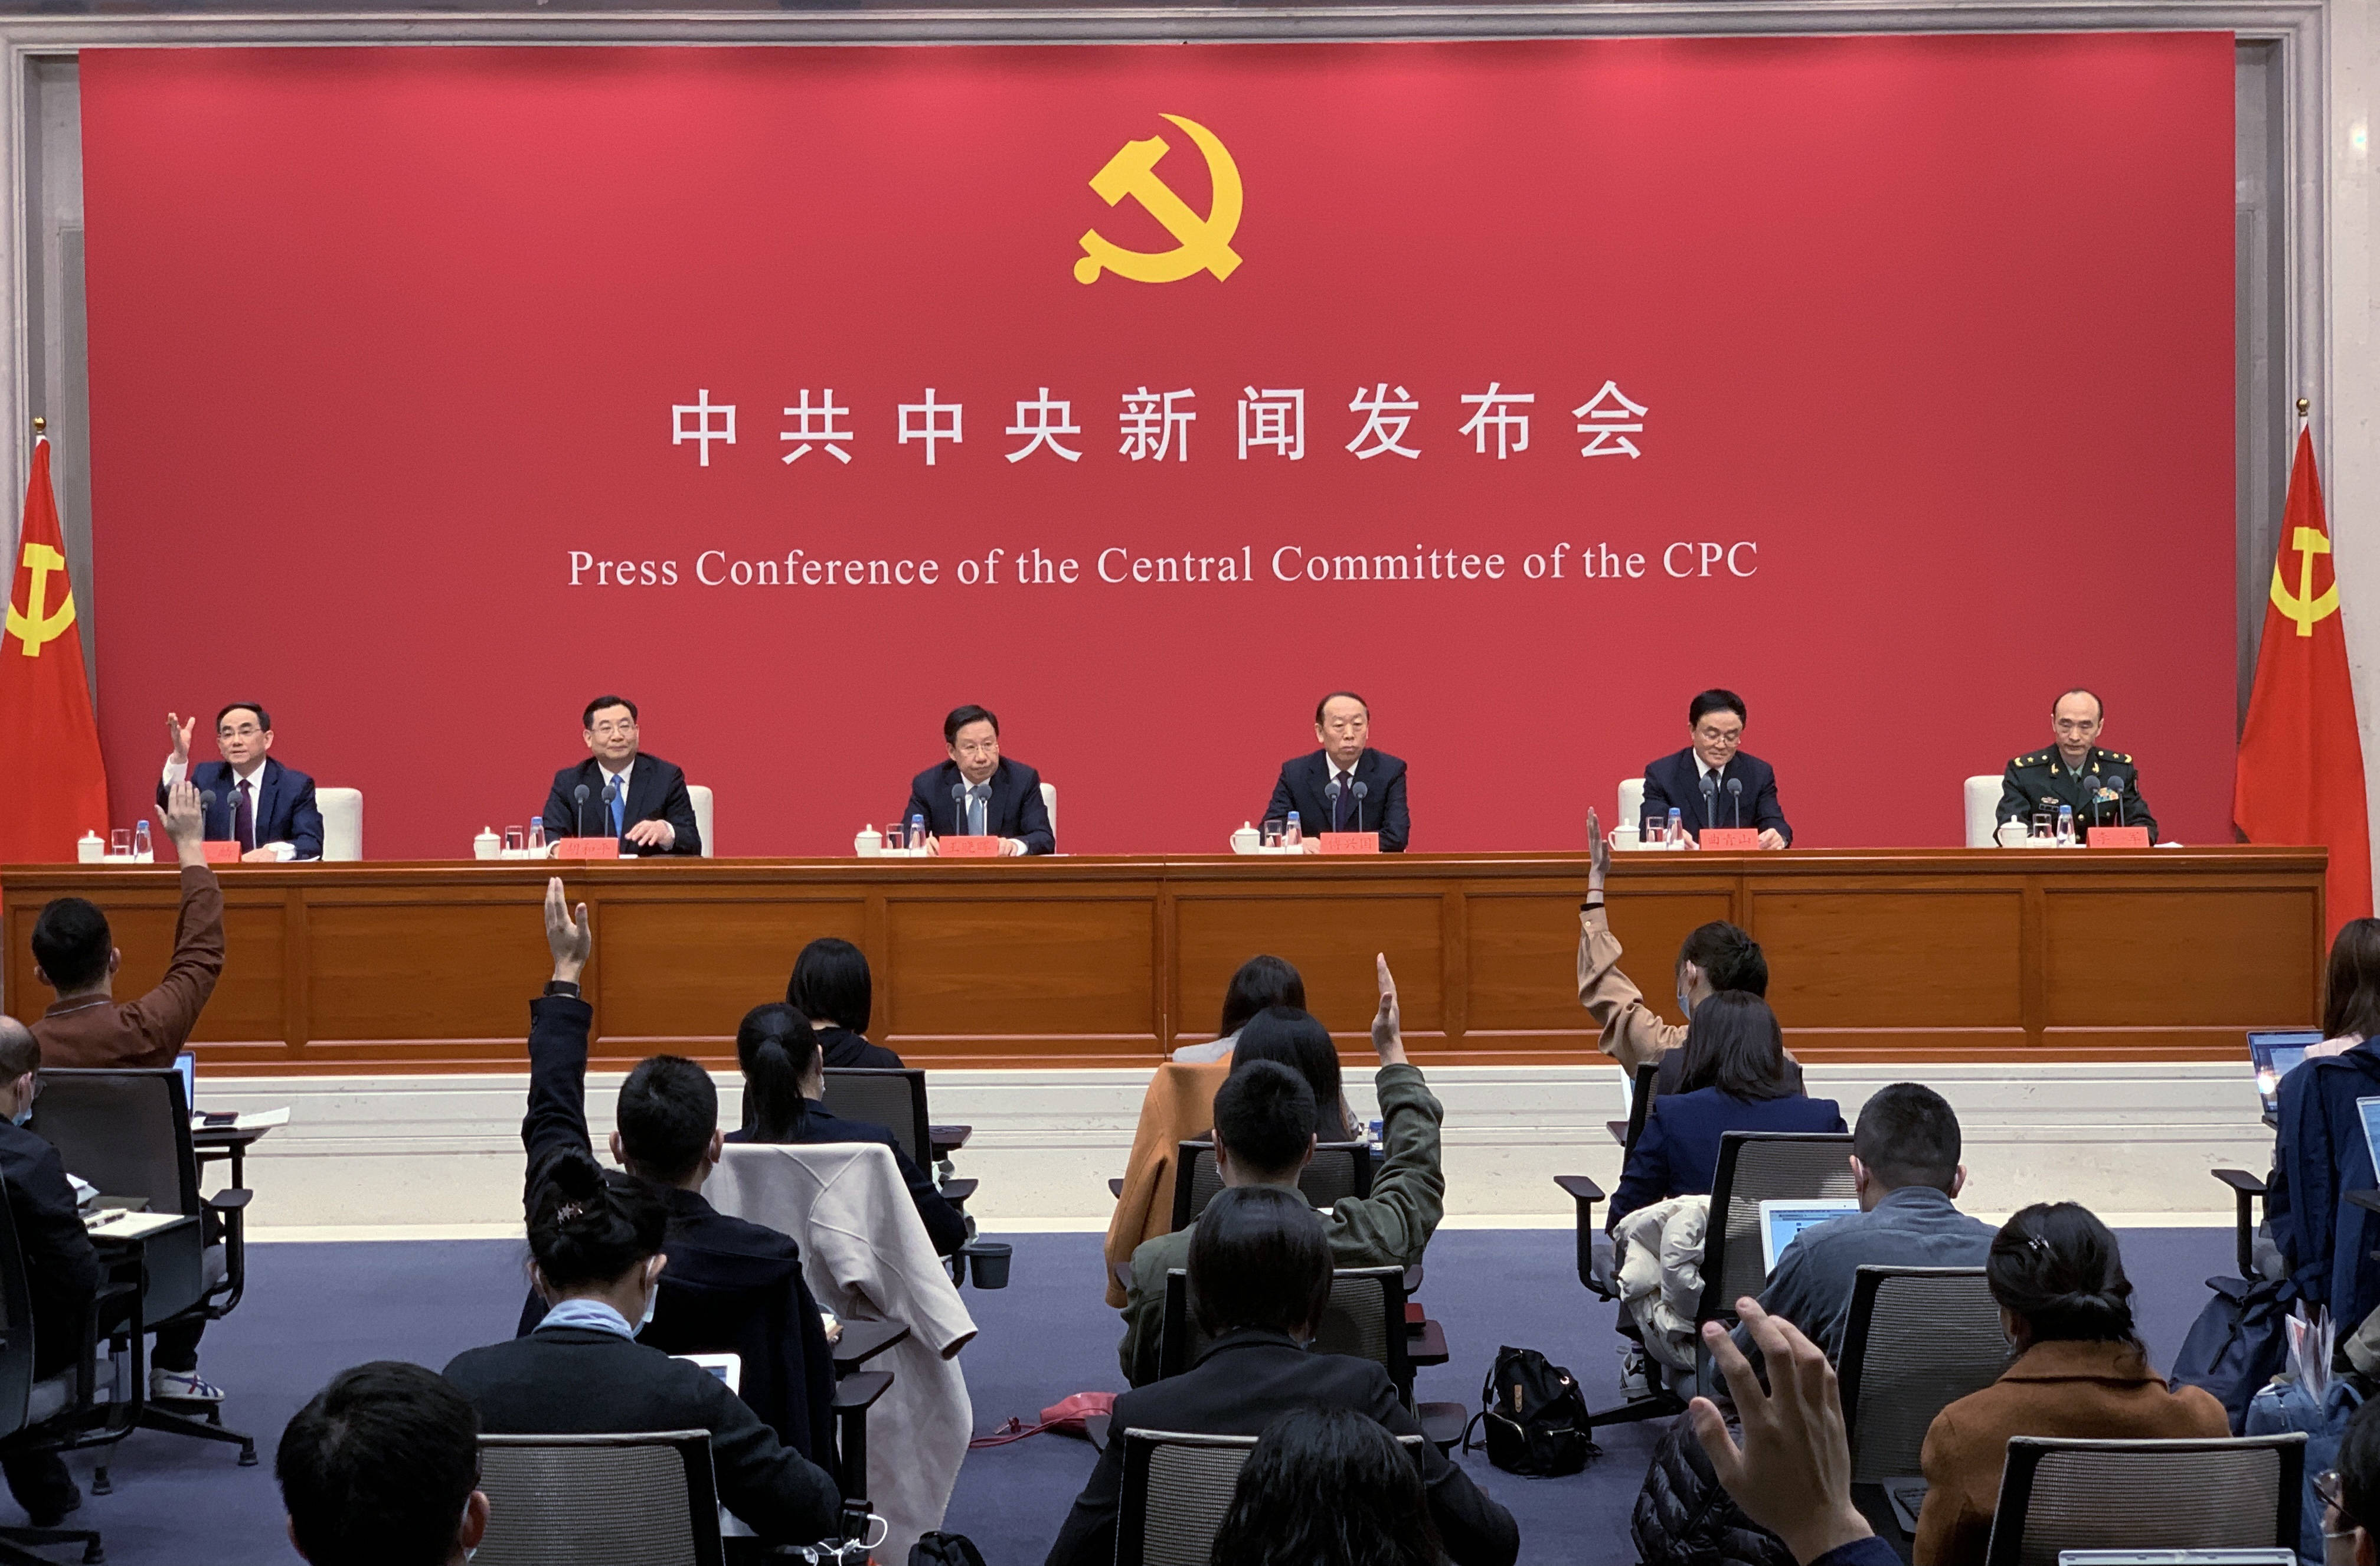 意识形态指导，基层热情，民生改善和交流往来-中国共产党中央委员会召开新闻发布会，介绍庆祝中国共产党成立100周年